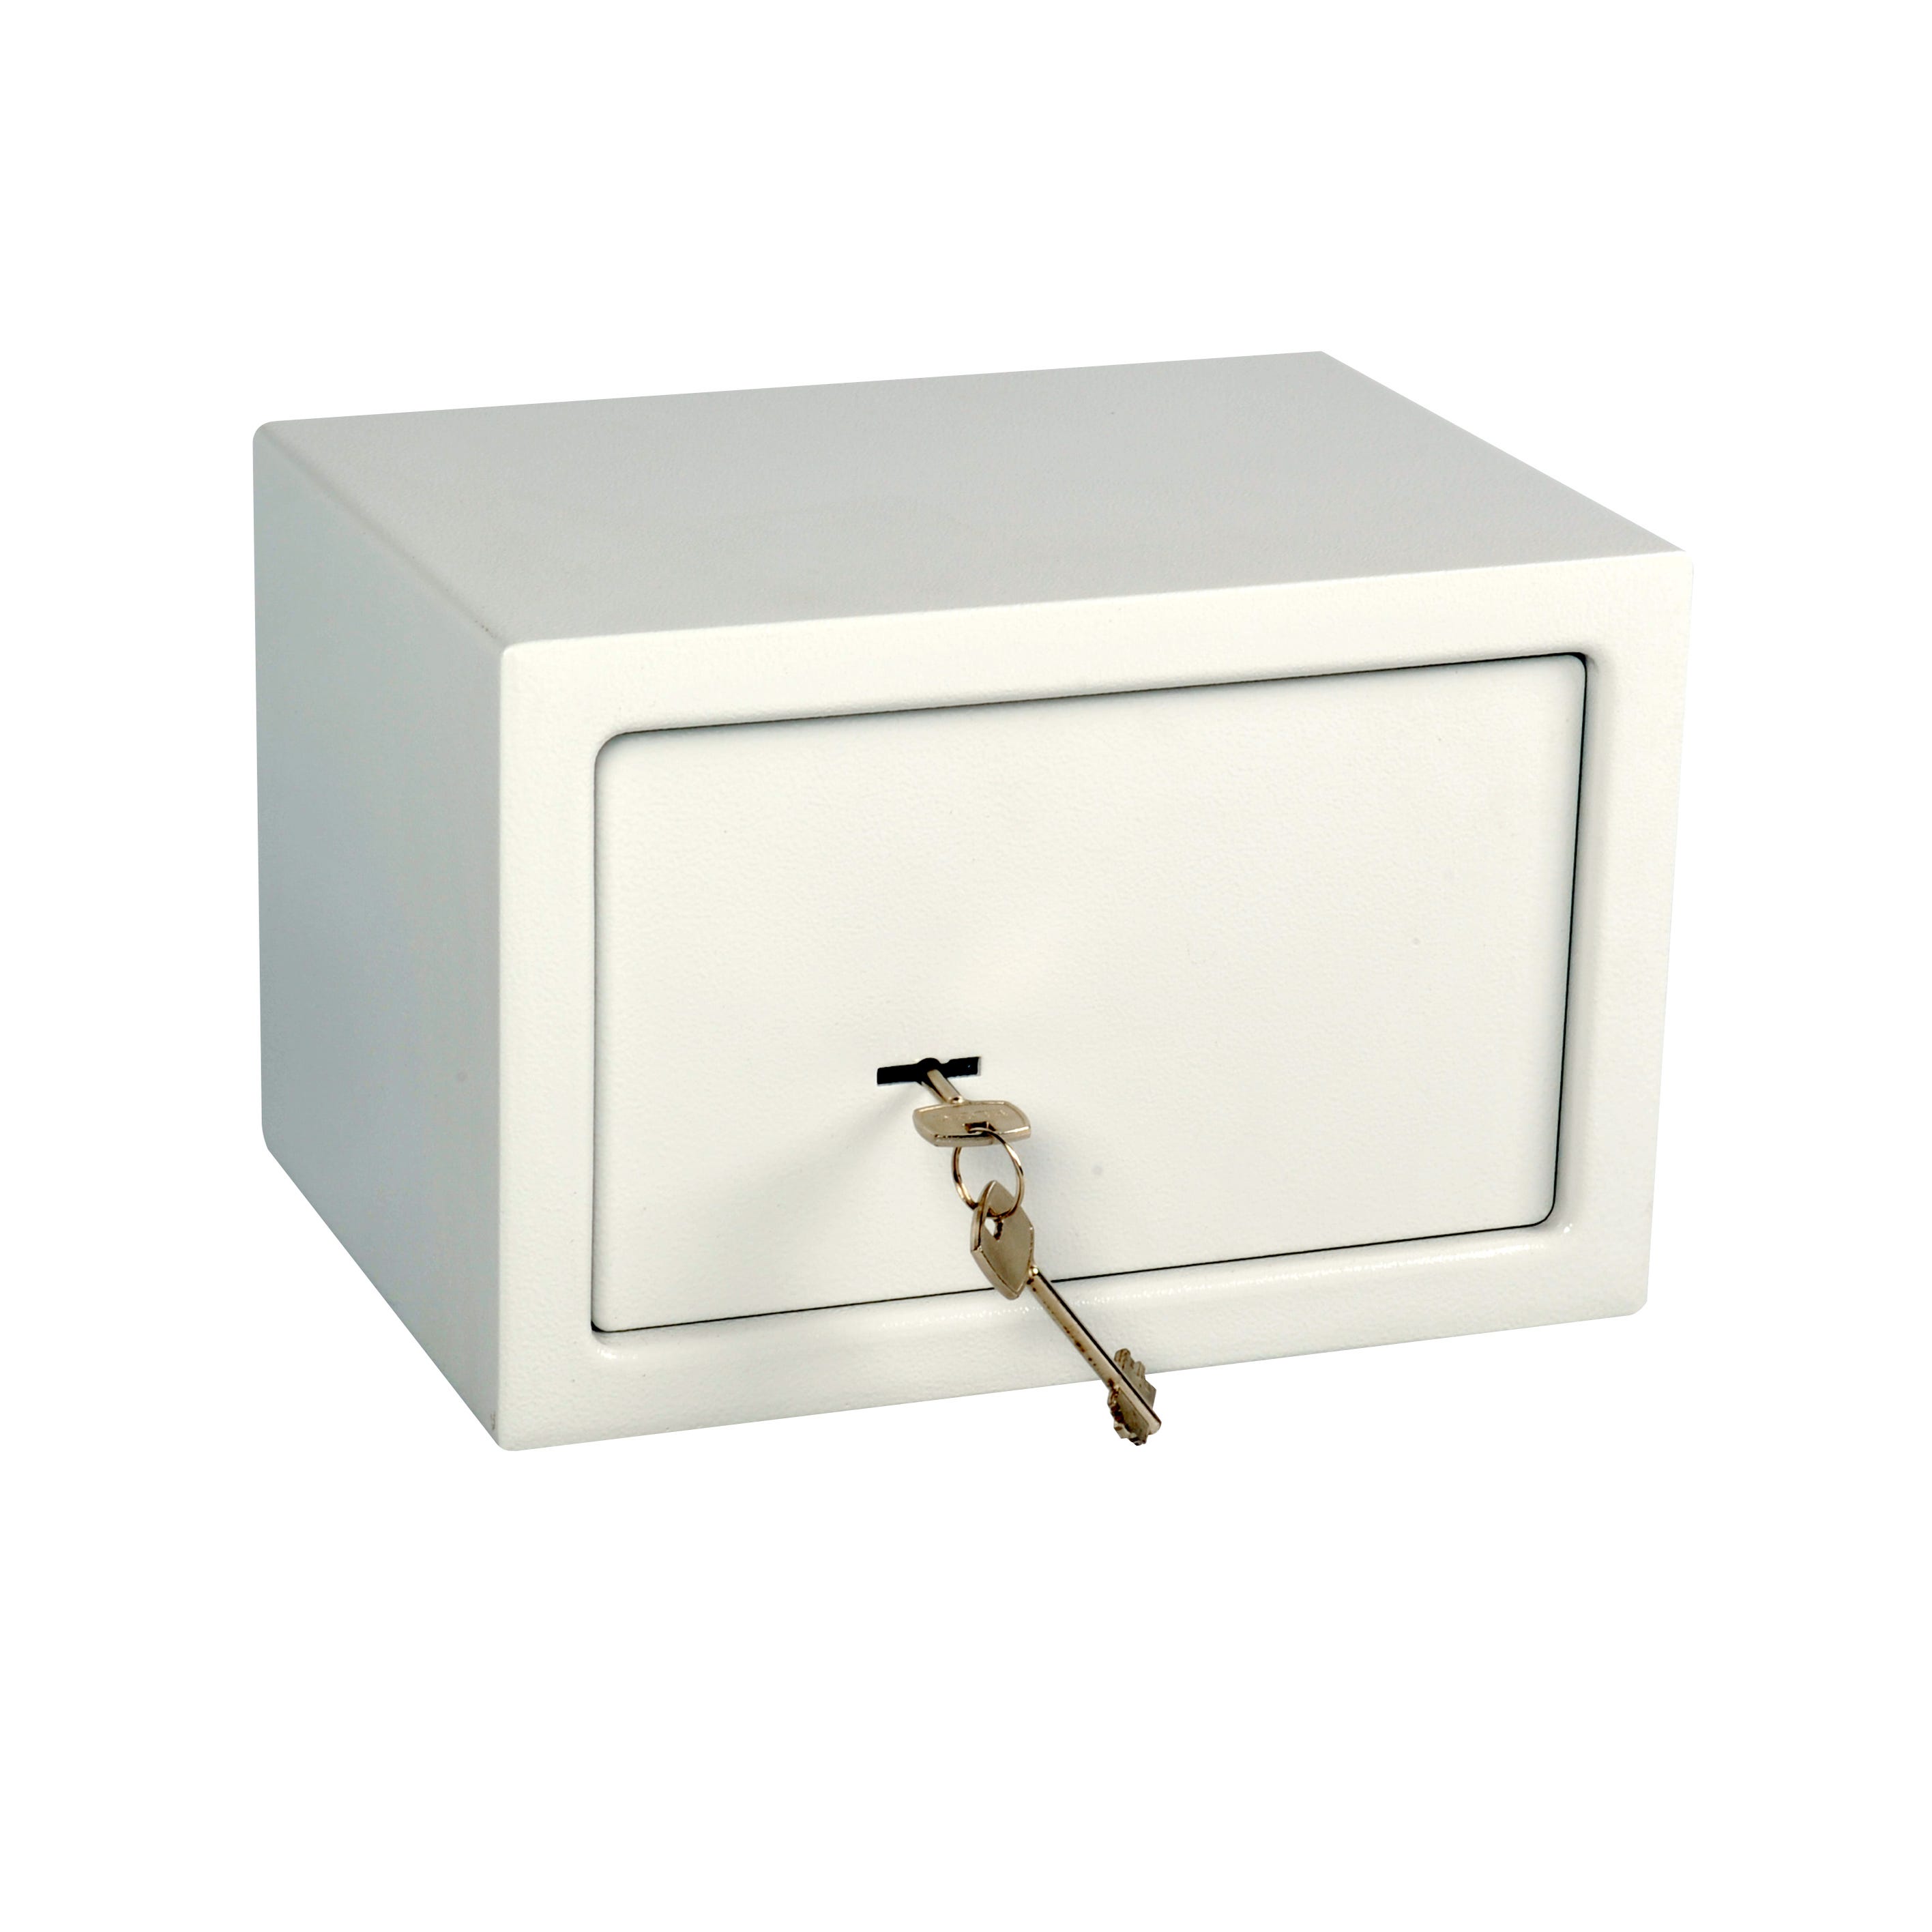 GENERICO Mini Caja Fuerte Pequeña Caja Con Llave Caja Seguridad Metal  Blanco.